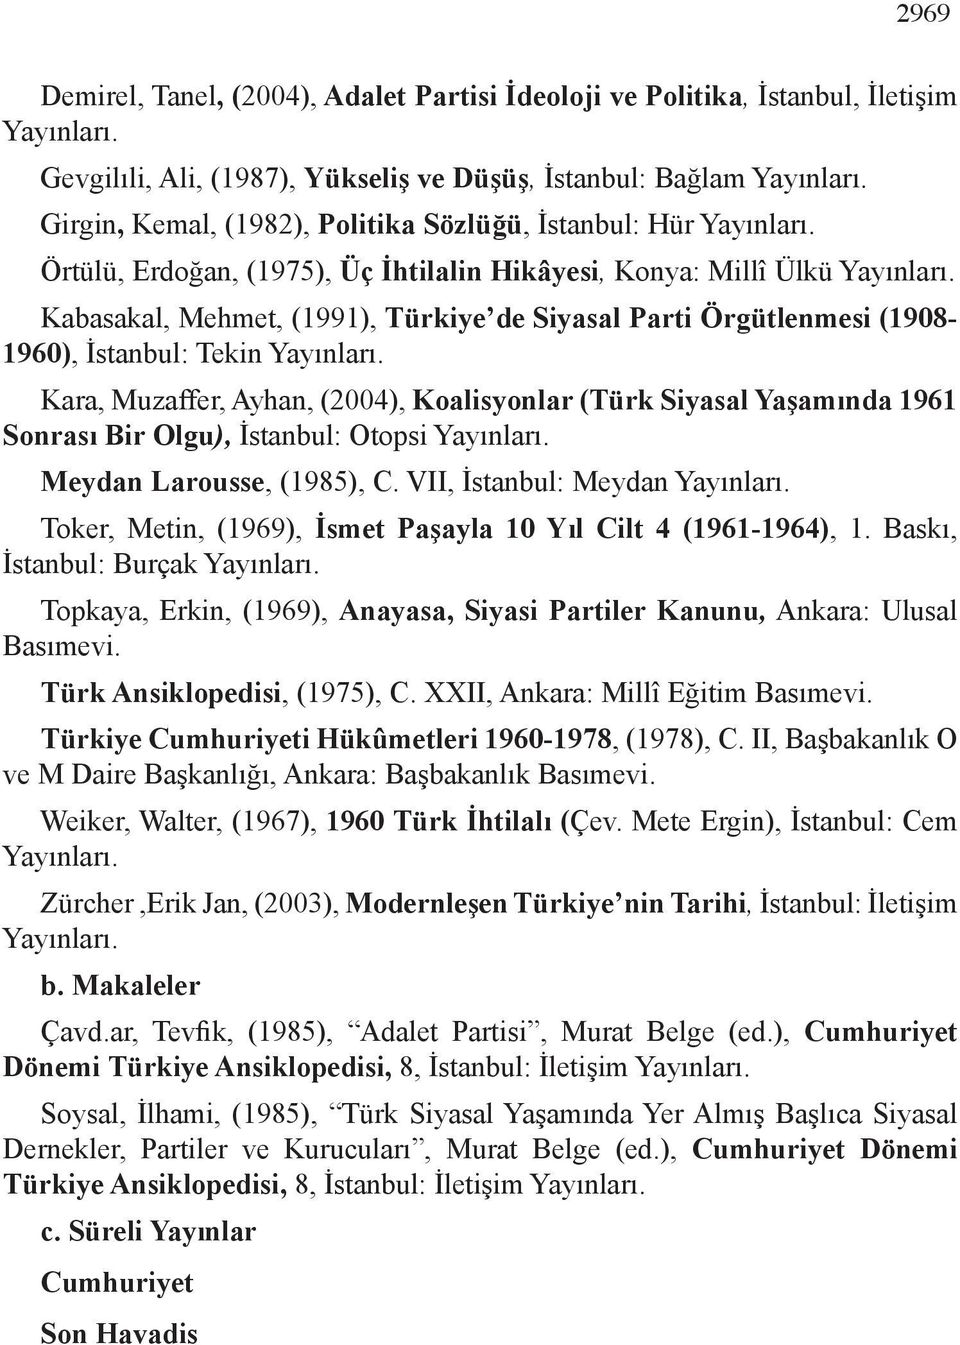 Kabasakal, Mehmet, (1991), Türkiye de Siyasal Parti Örgütlenmesi (1908-1960), İstanbul: Tekin Yayınları.